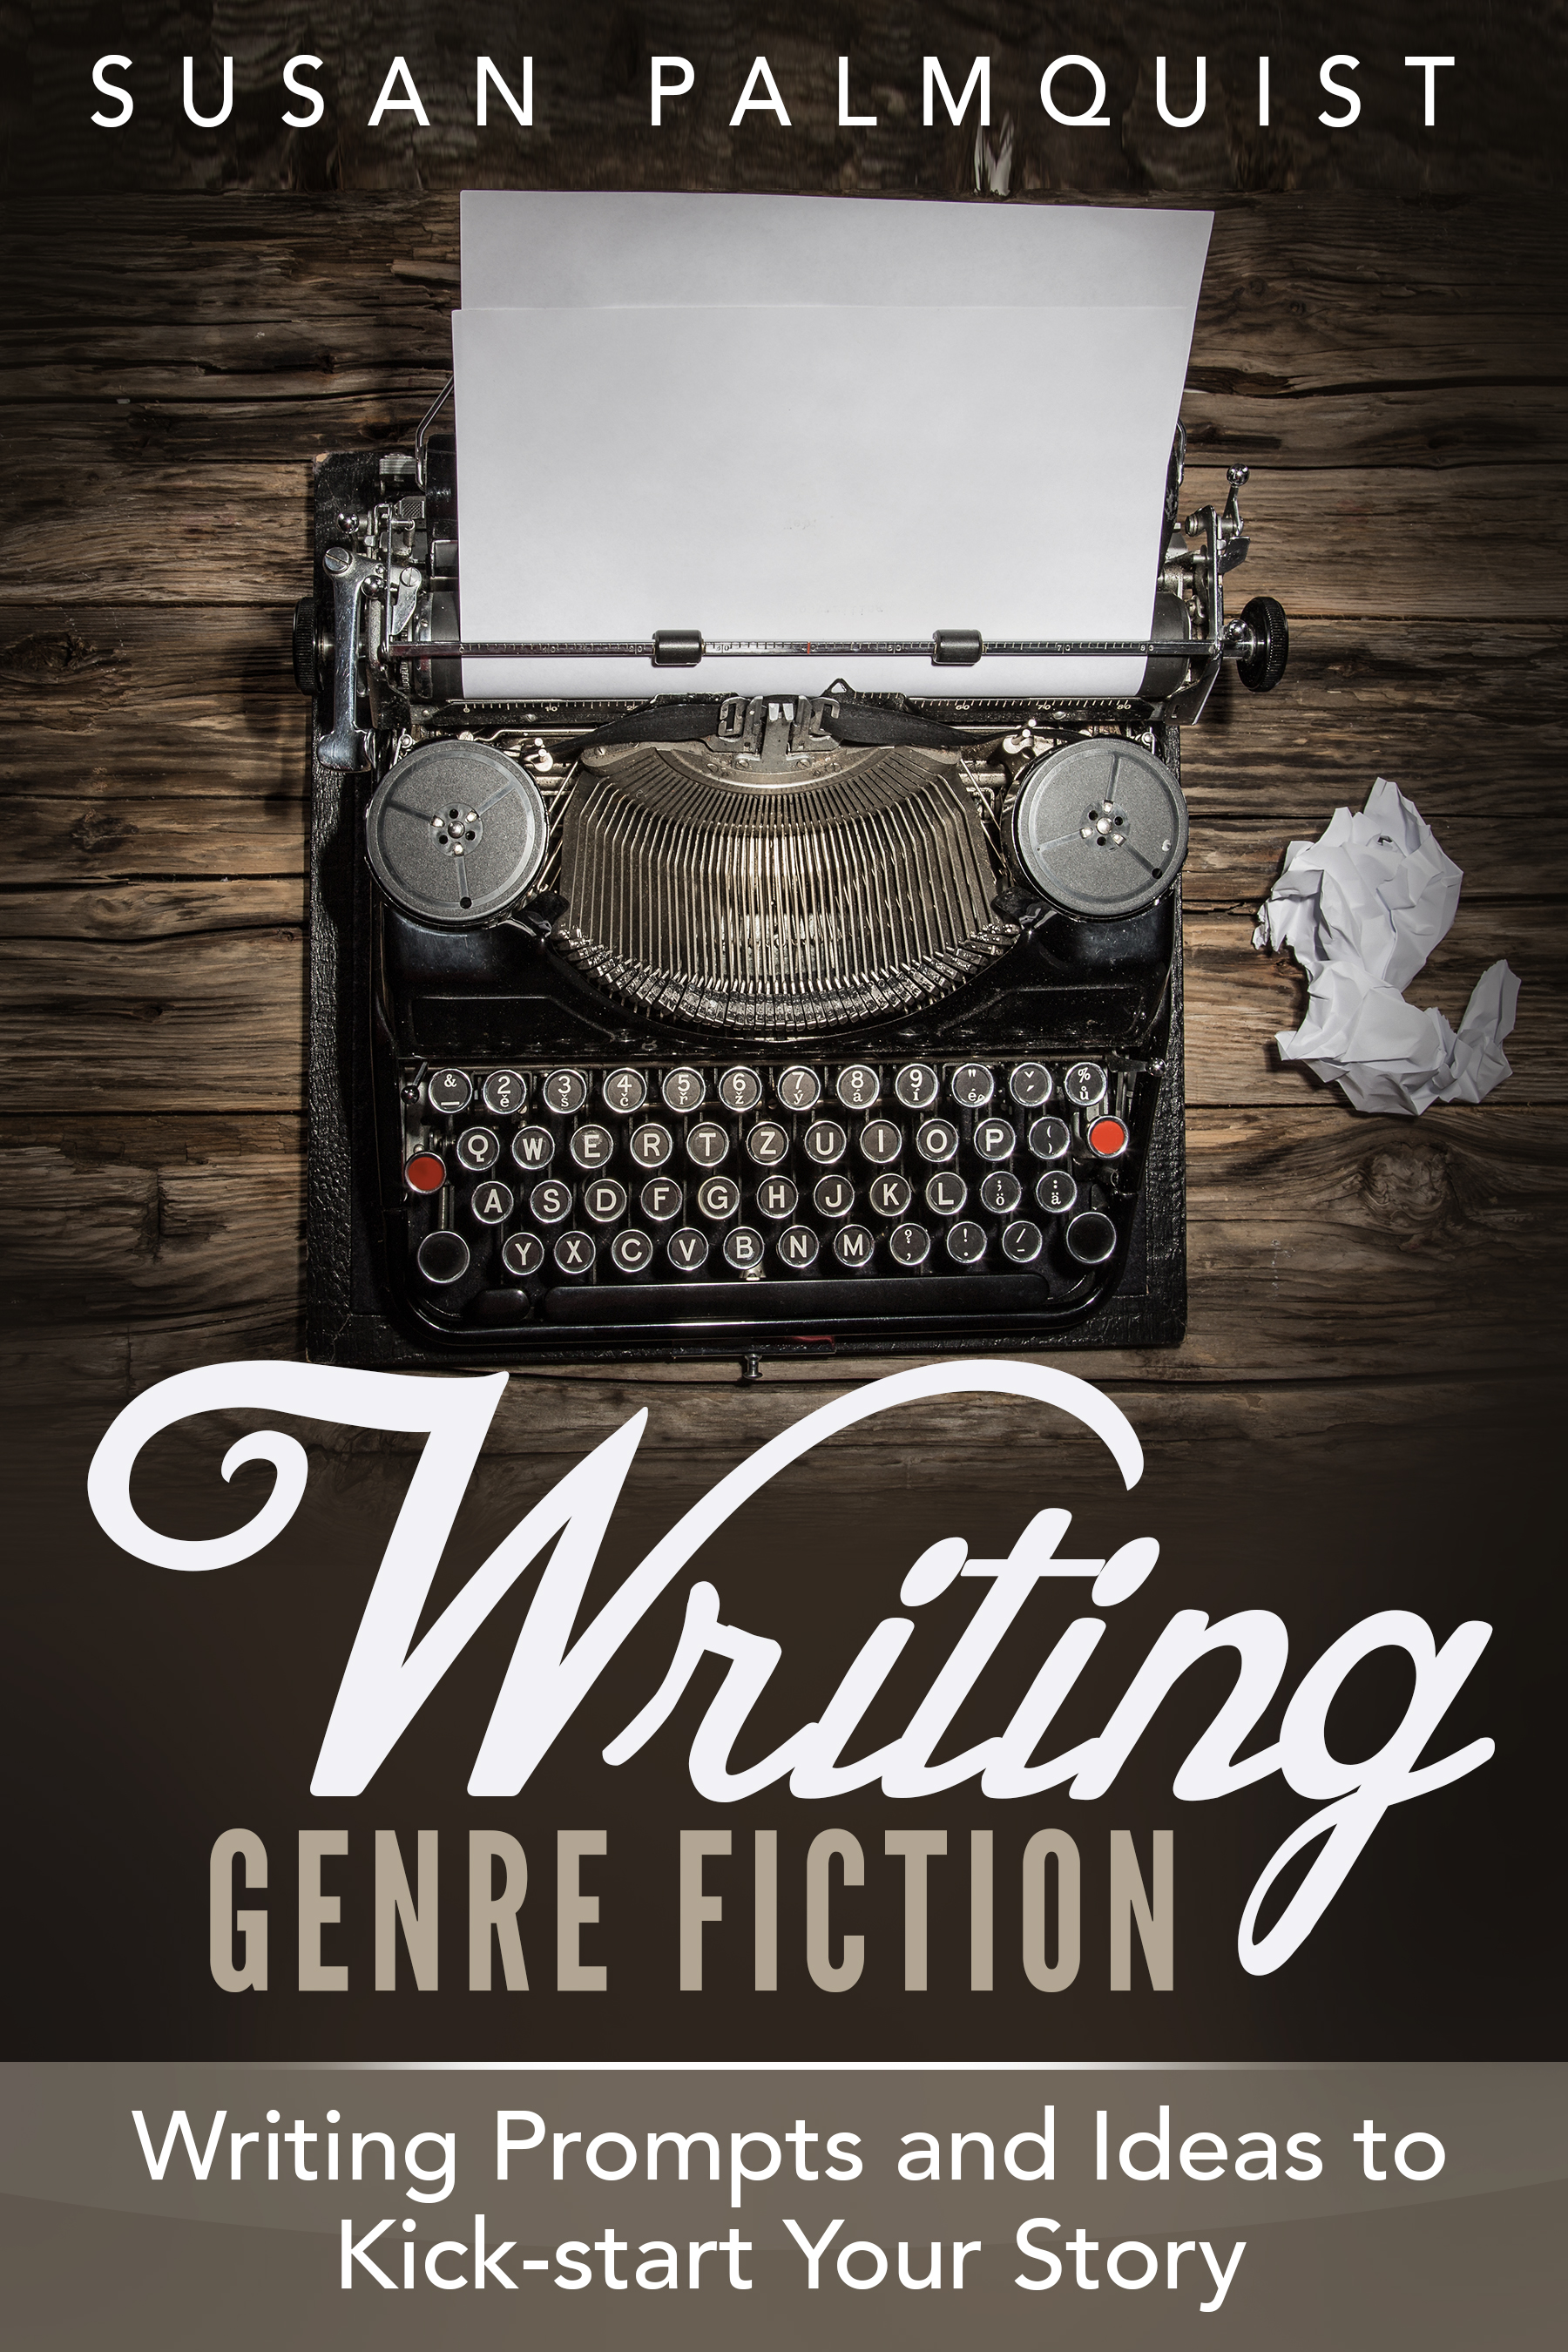 V3-Writing Genre Fiction